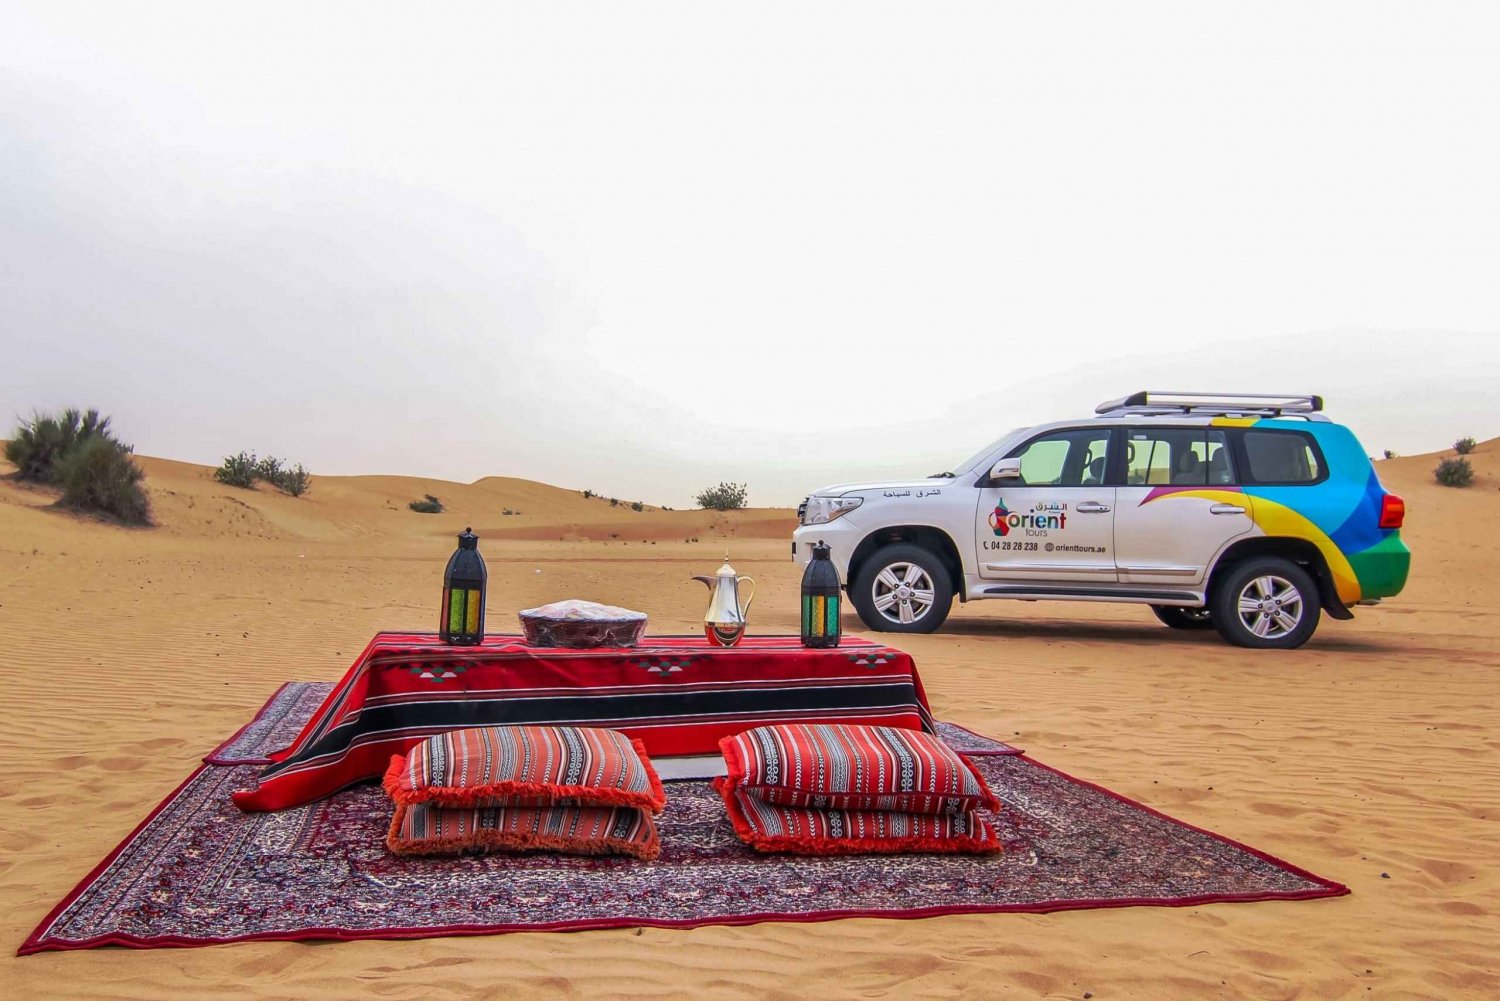 Dubai: Overnight Desert Safari with stay in Private Cabin